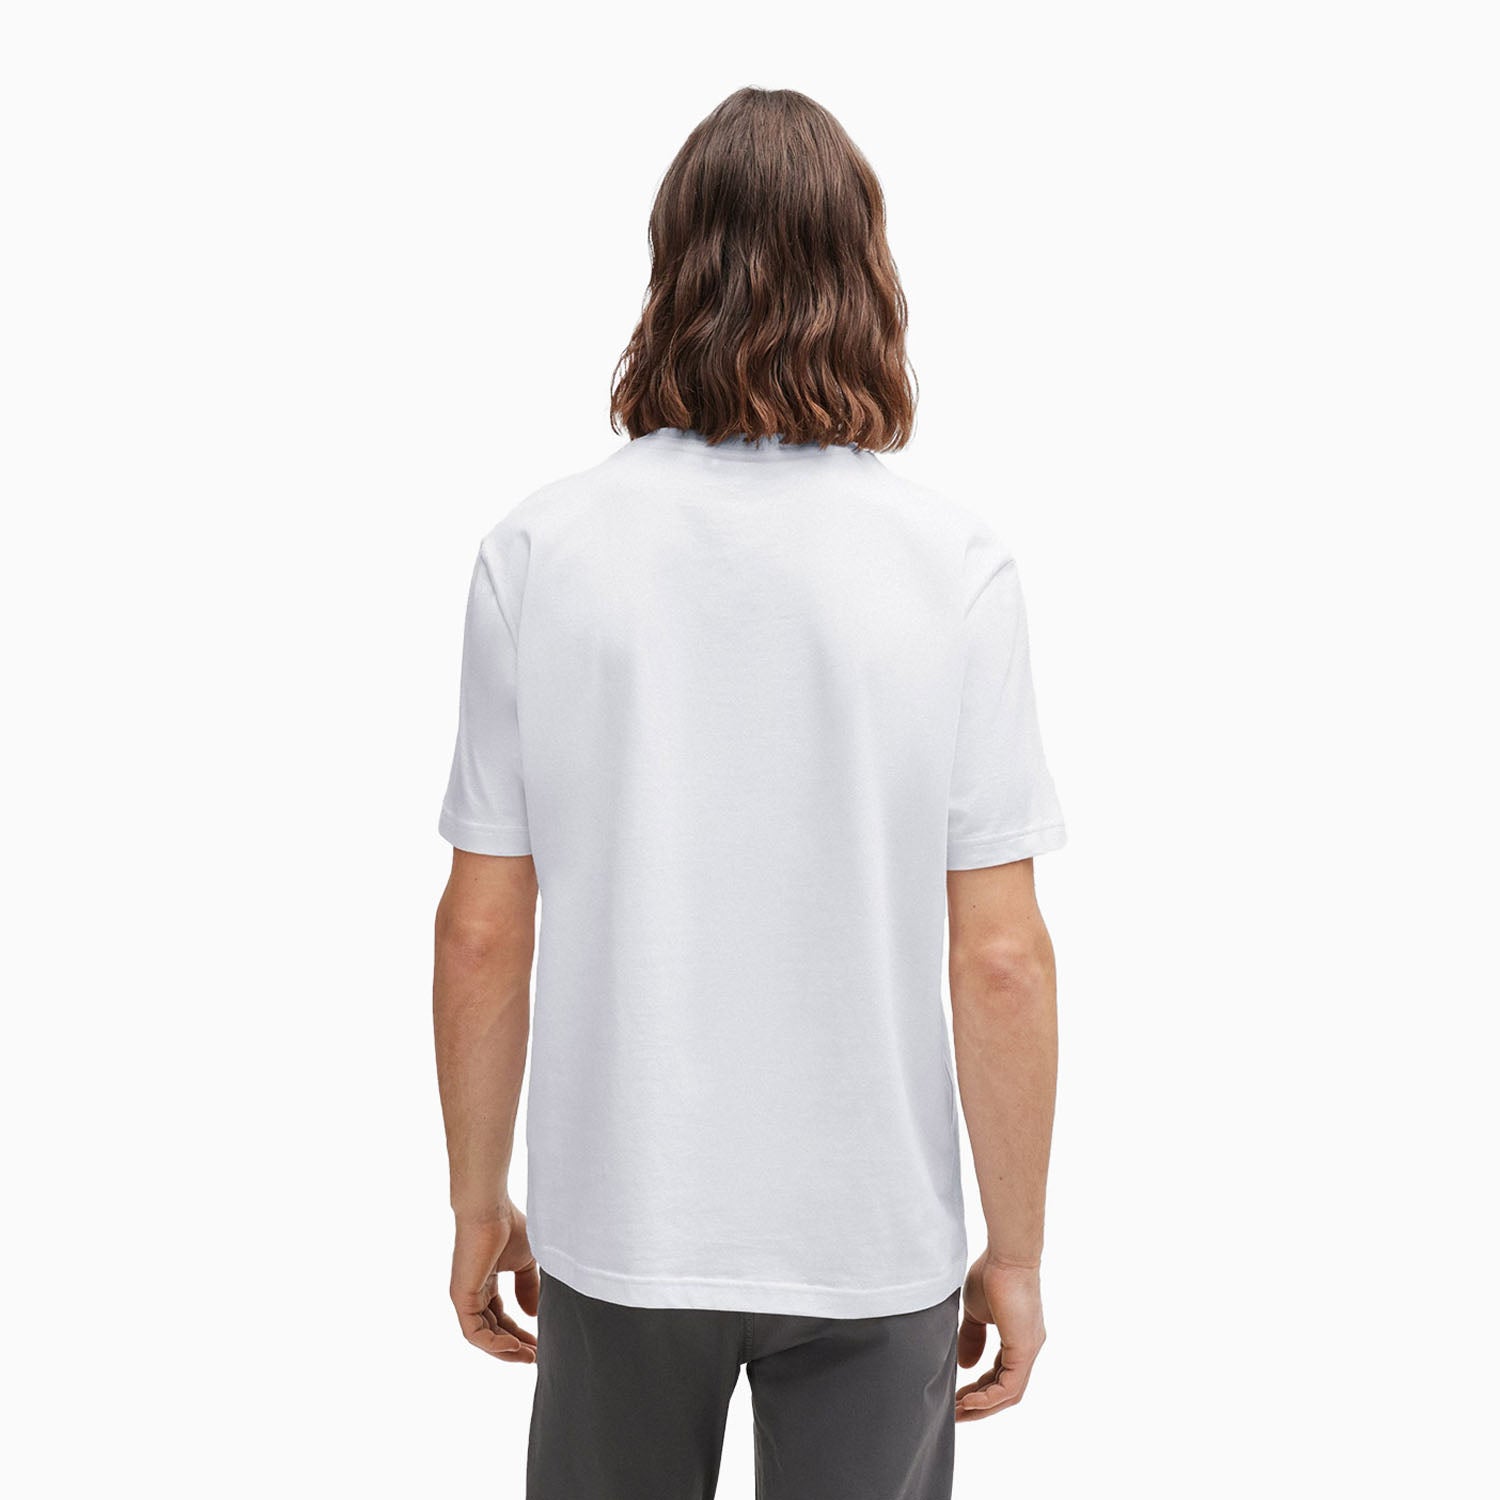 hugo-boss-mens-regular-fit-t-shirt-in-cotton-with-seasonal-artwork-50515829-101